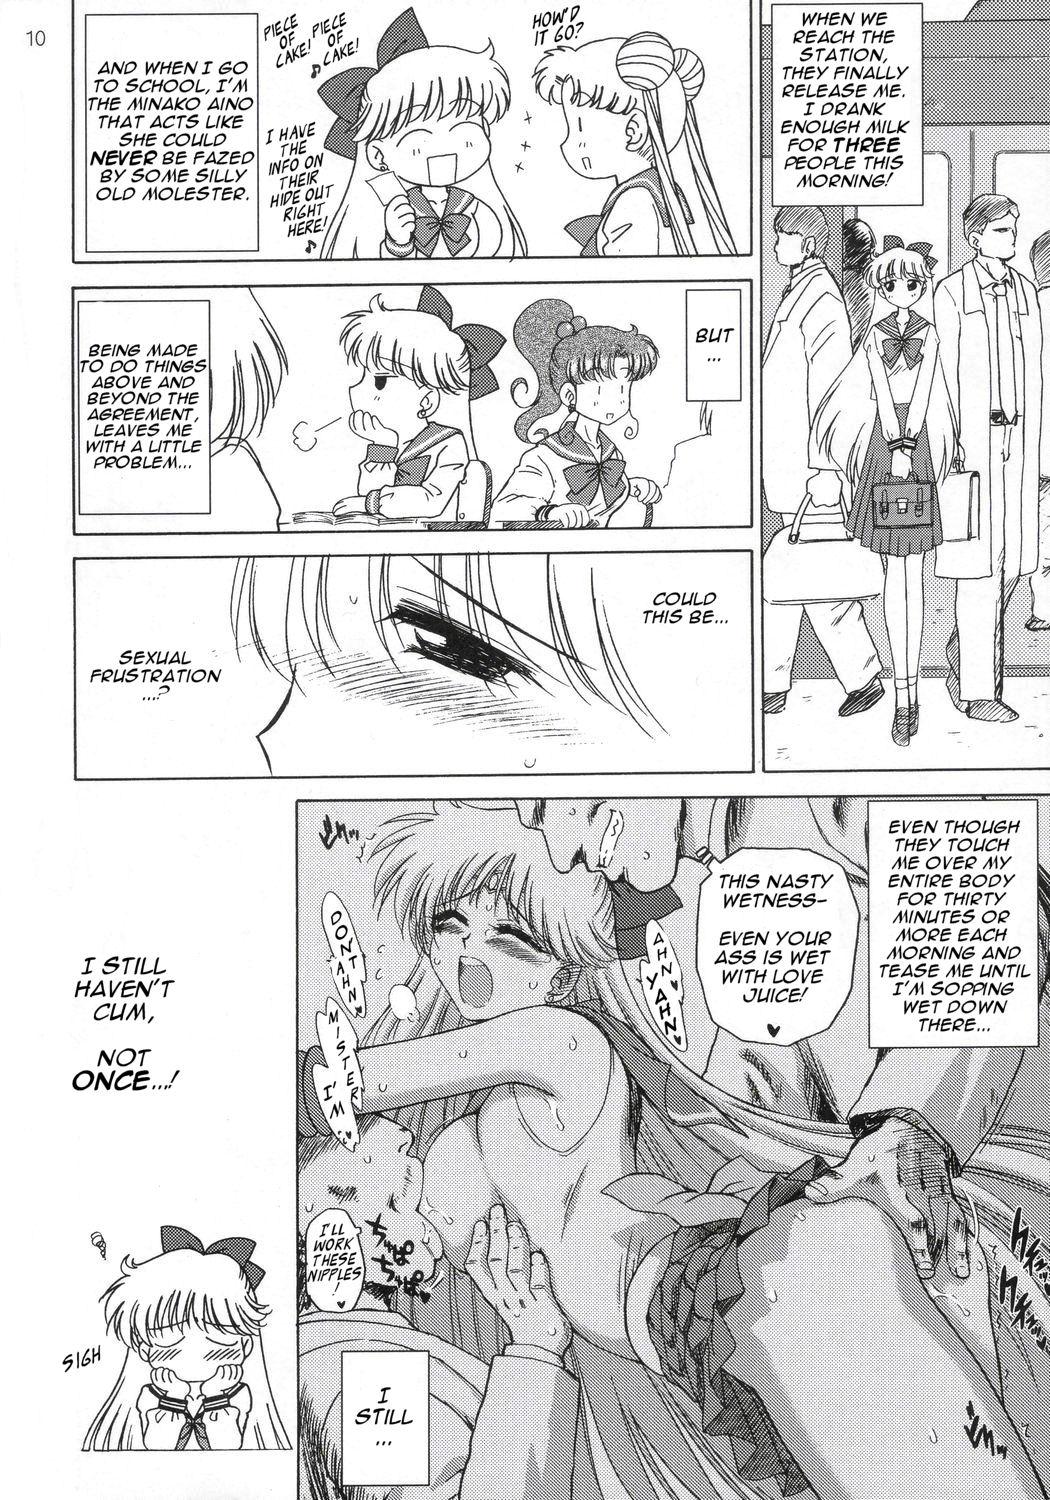 Casado Super Fly - Sailor moon One - Page 9